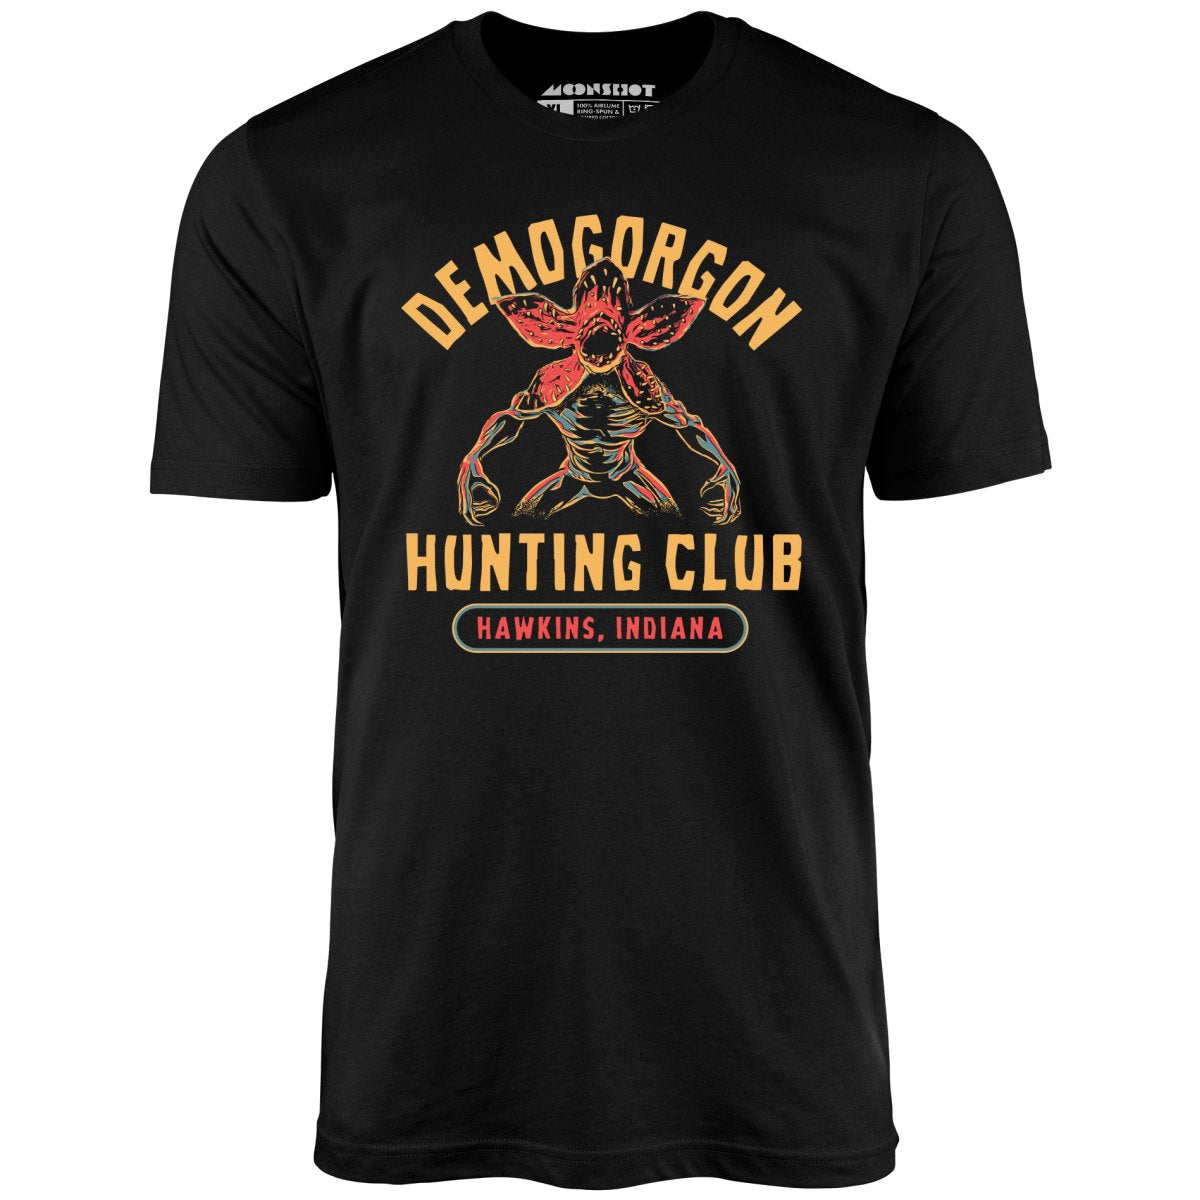 Demogorgon Hunting Club - Unisex T-Shirt